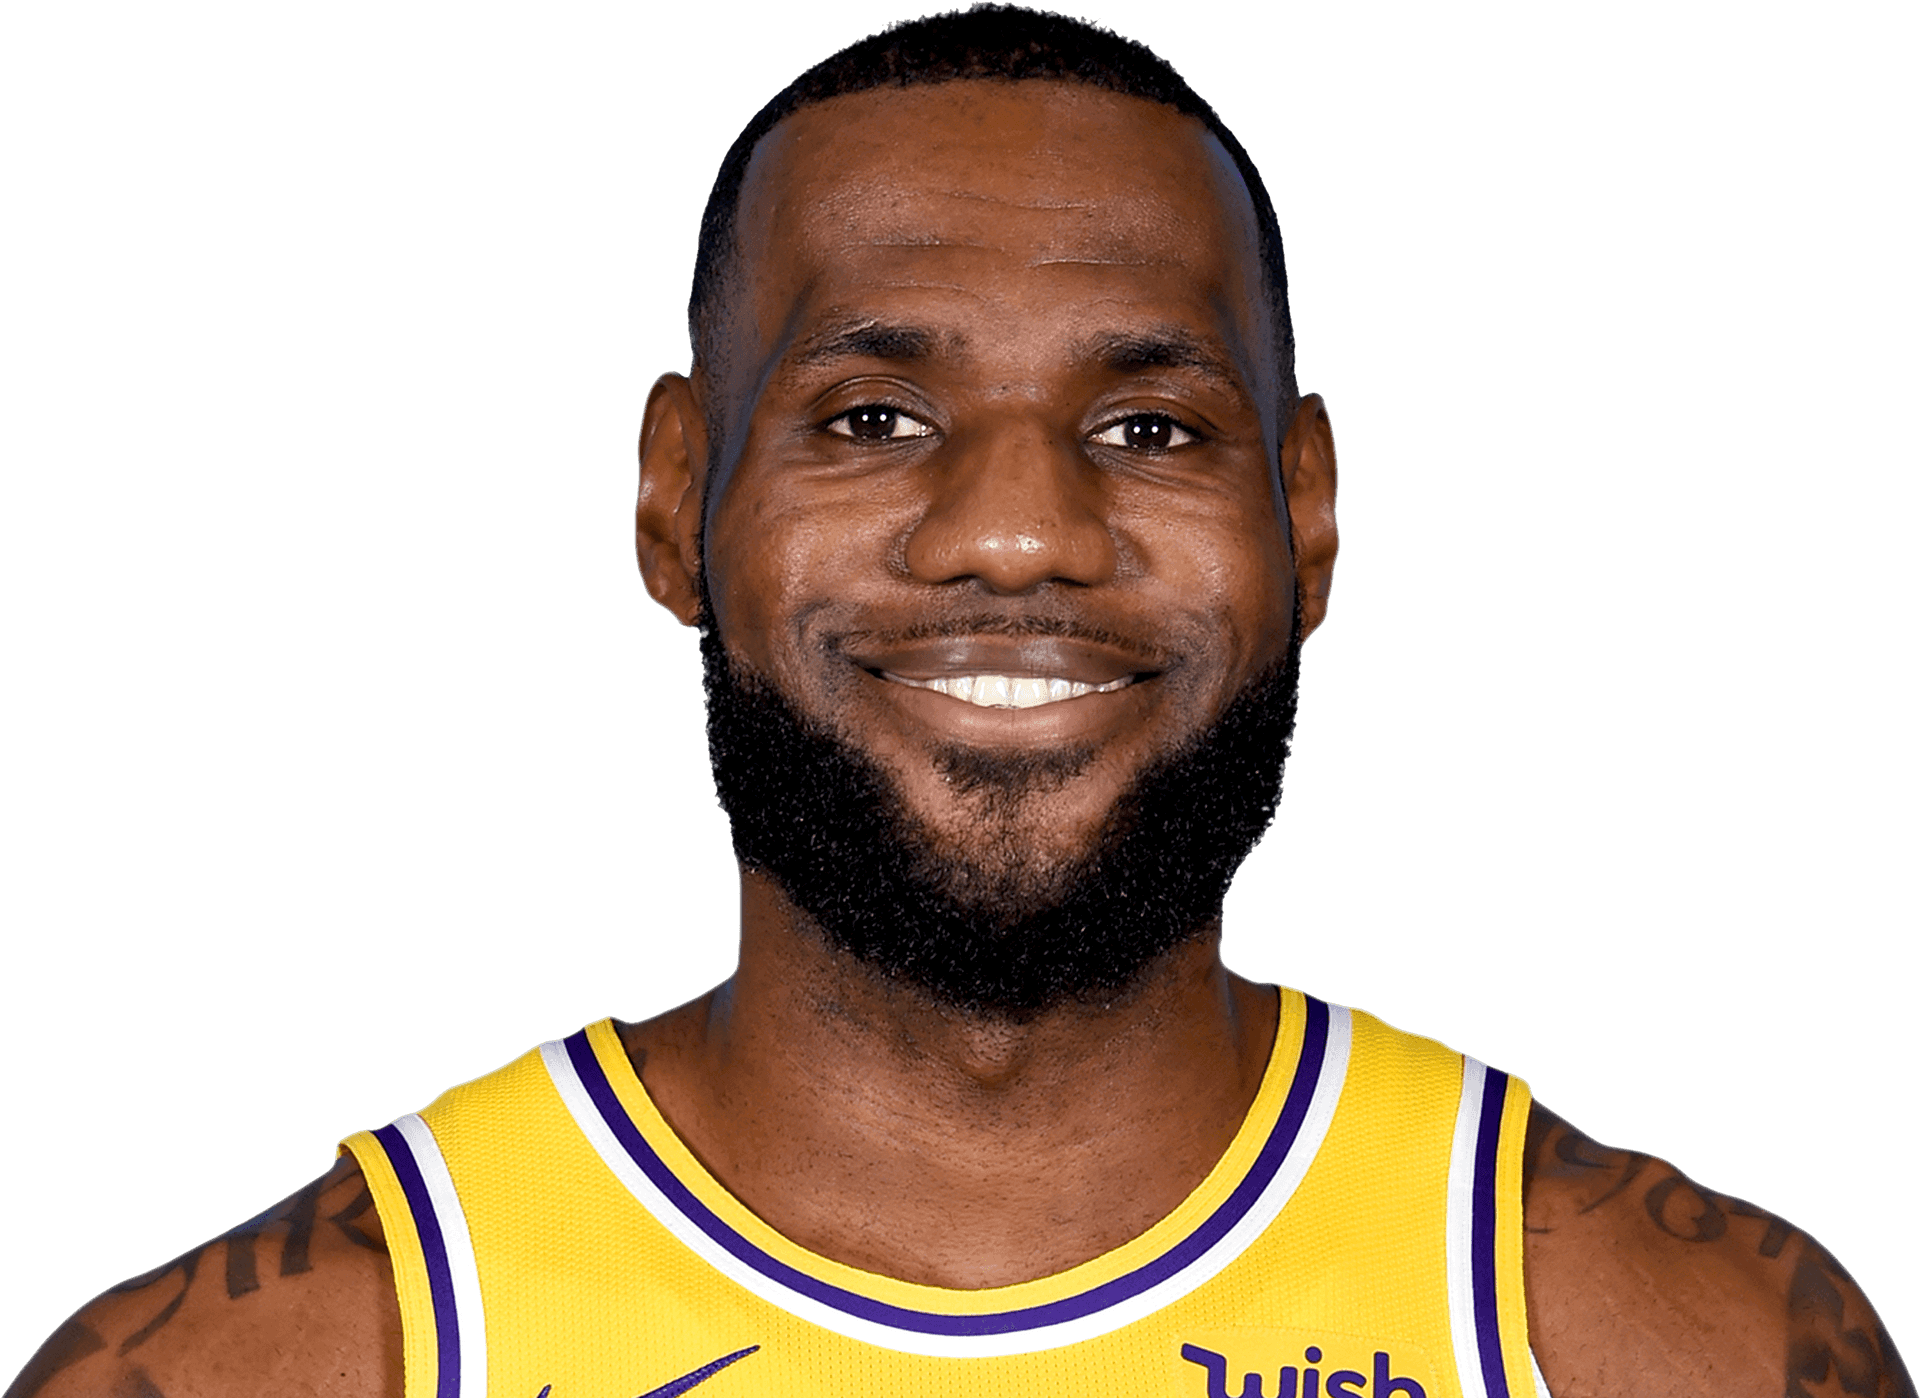 Download Le Bron James Lakers Portrait | Wallpapers.com